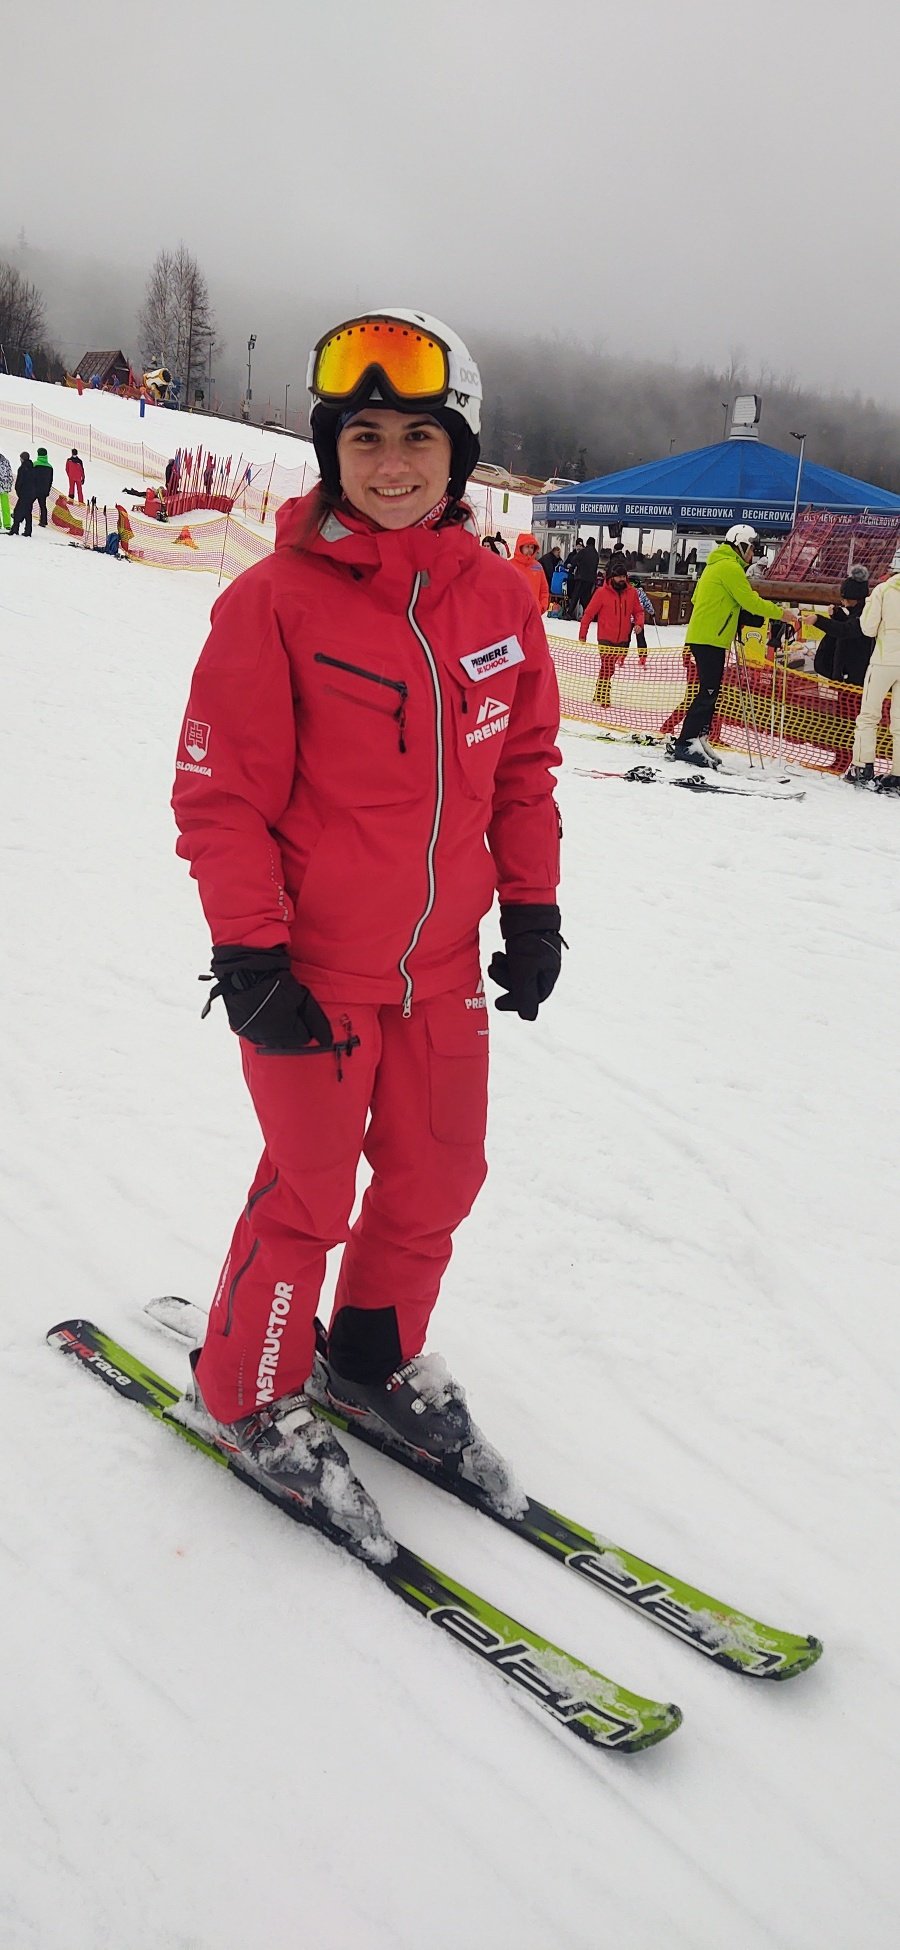 Júlia - Presedlala som na zjazdové lyžovanie